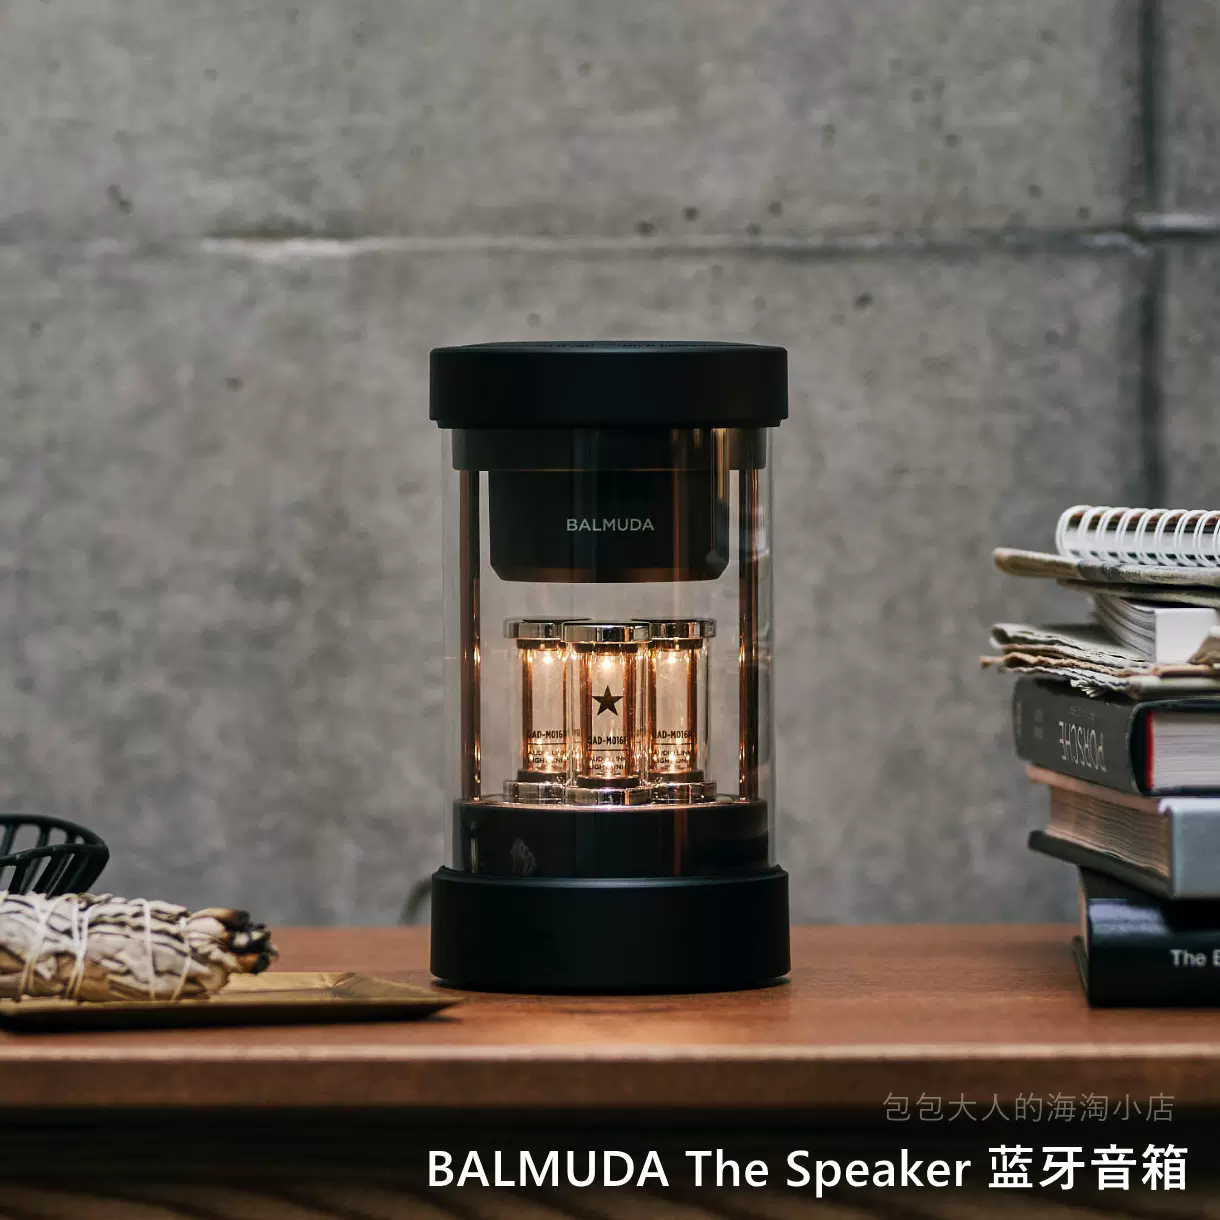 日本直购BALMUDA The Speaker 3D环绕立体声 无线便携式蓝牙音箱-Taobao